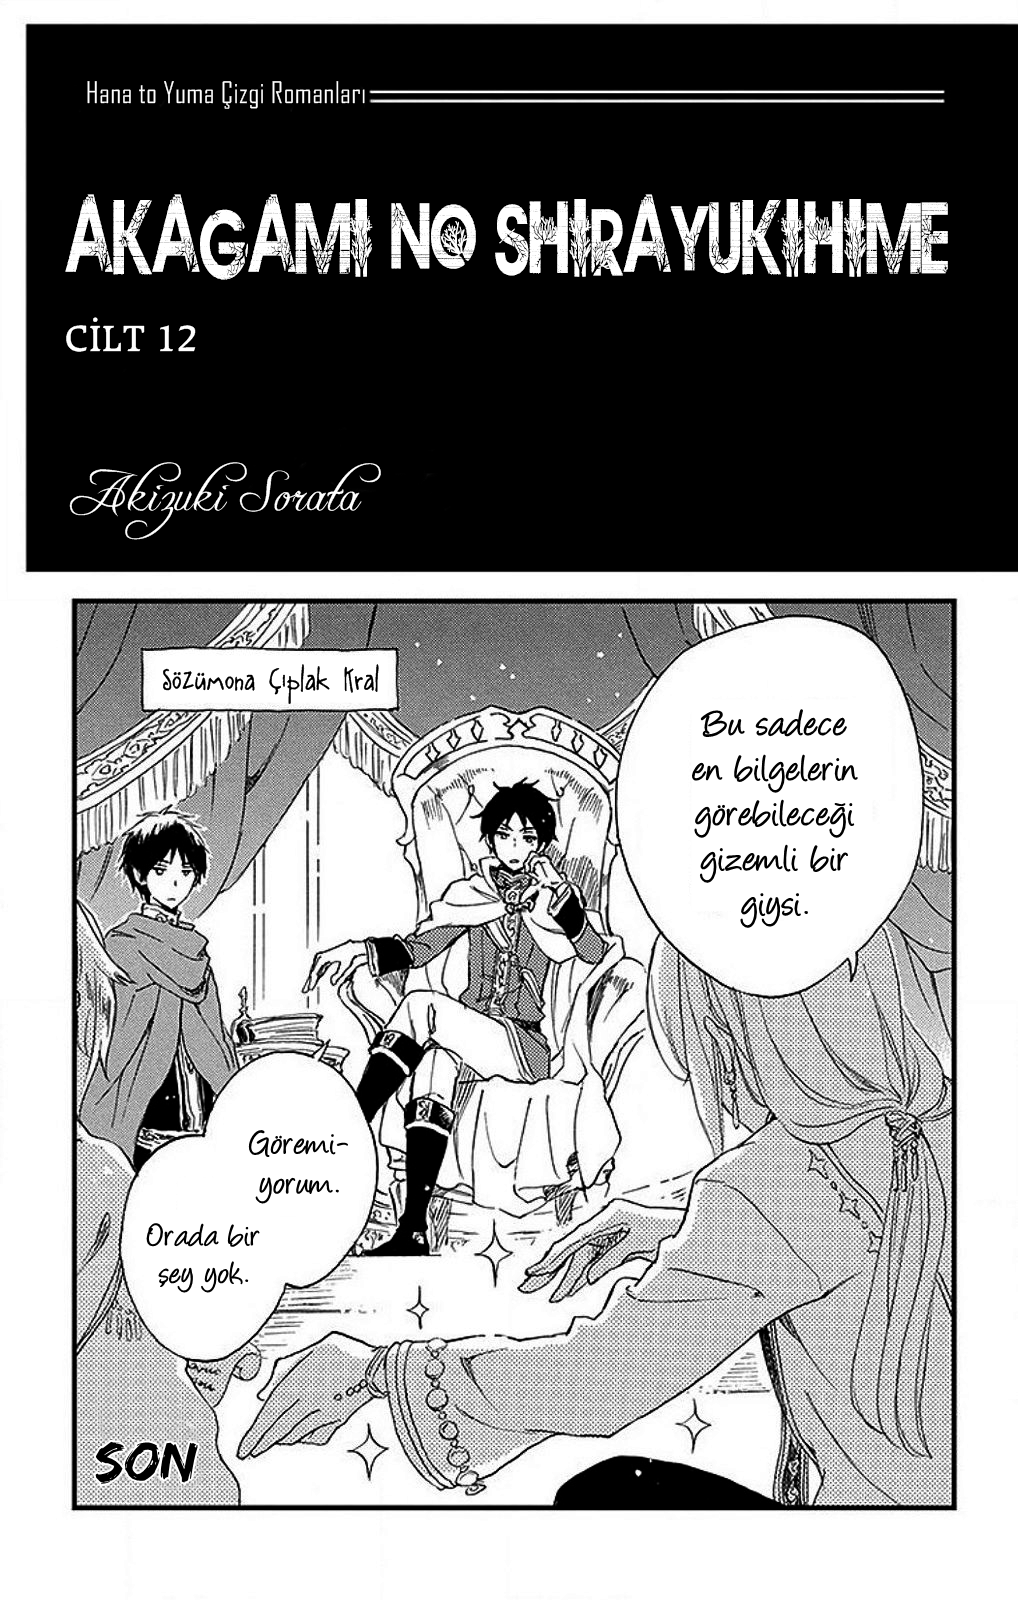 Akagami no Shirayukihime: Chapter 50 - Page 4